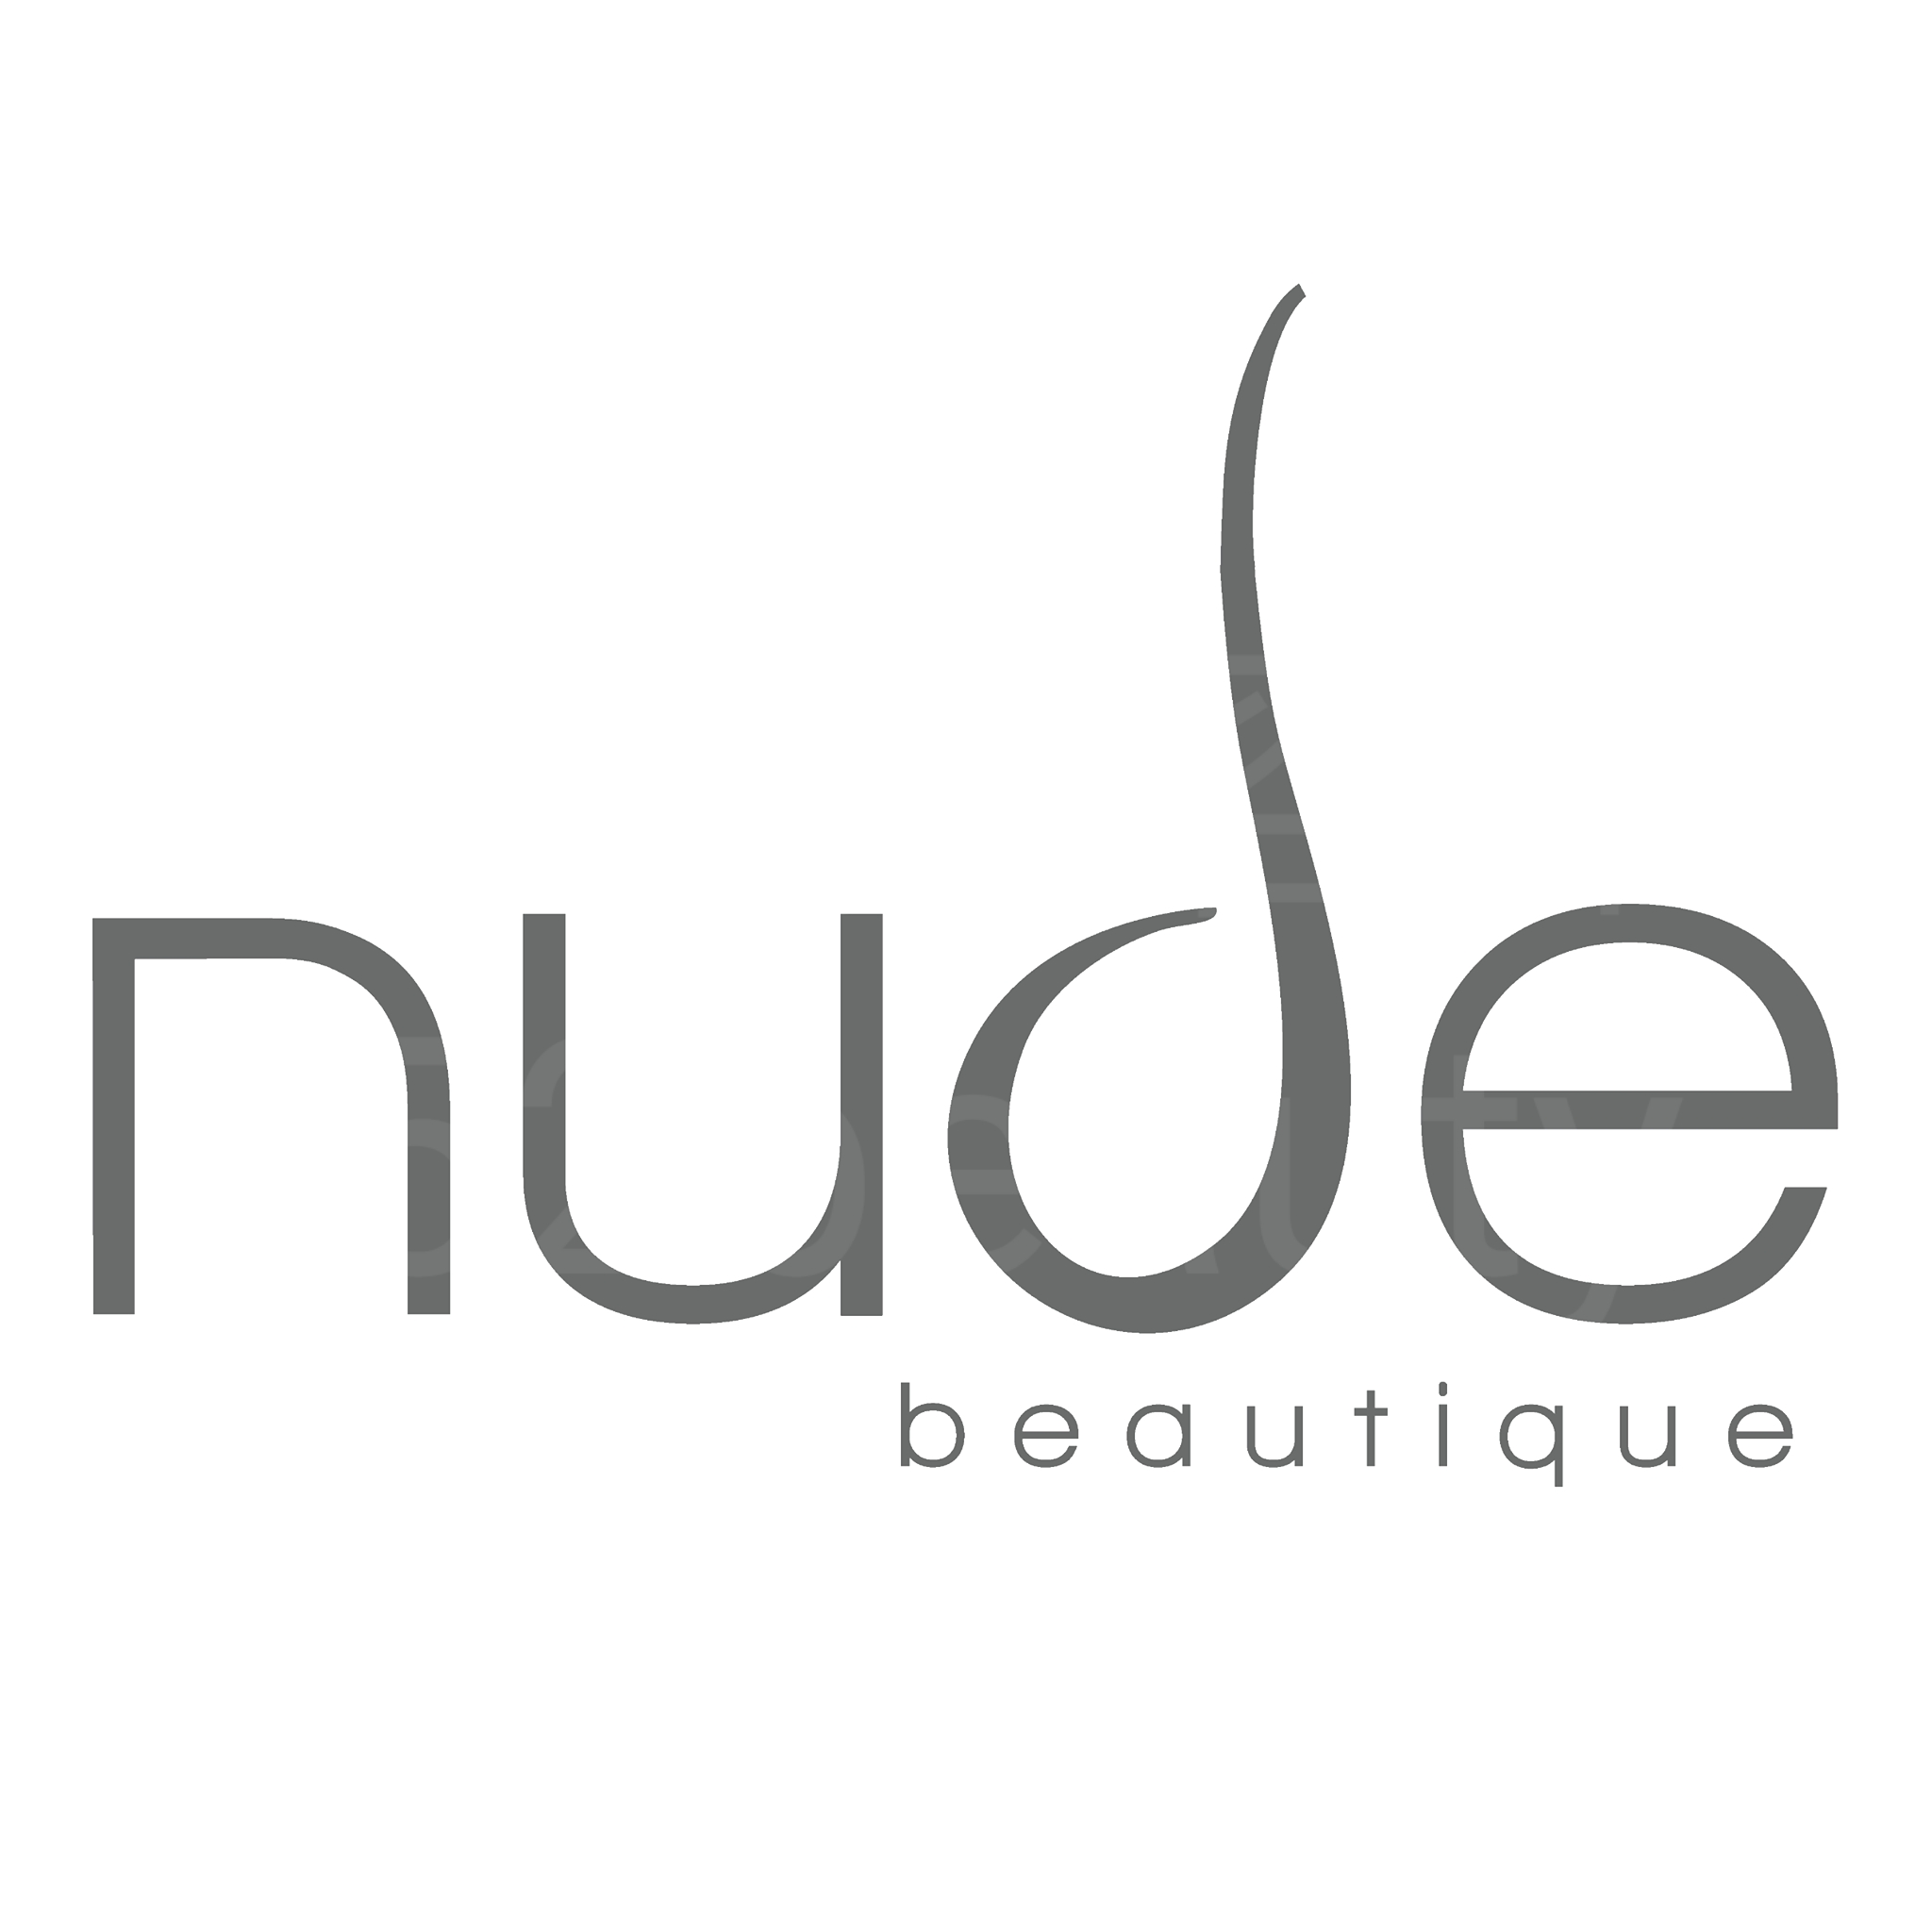 纤体瘦身: nude beautique (蘭桂芳分店)